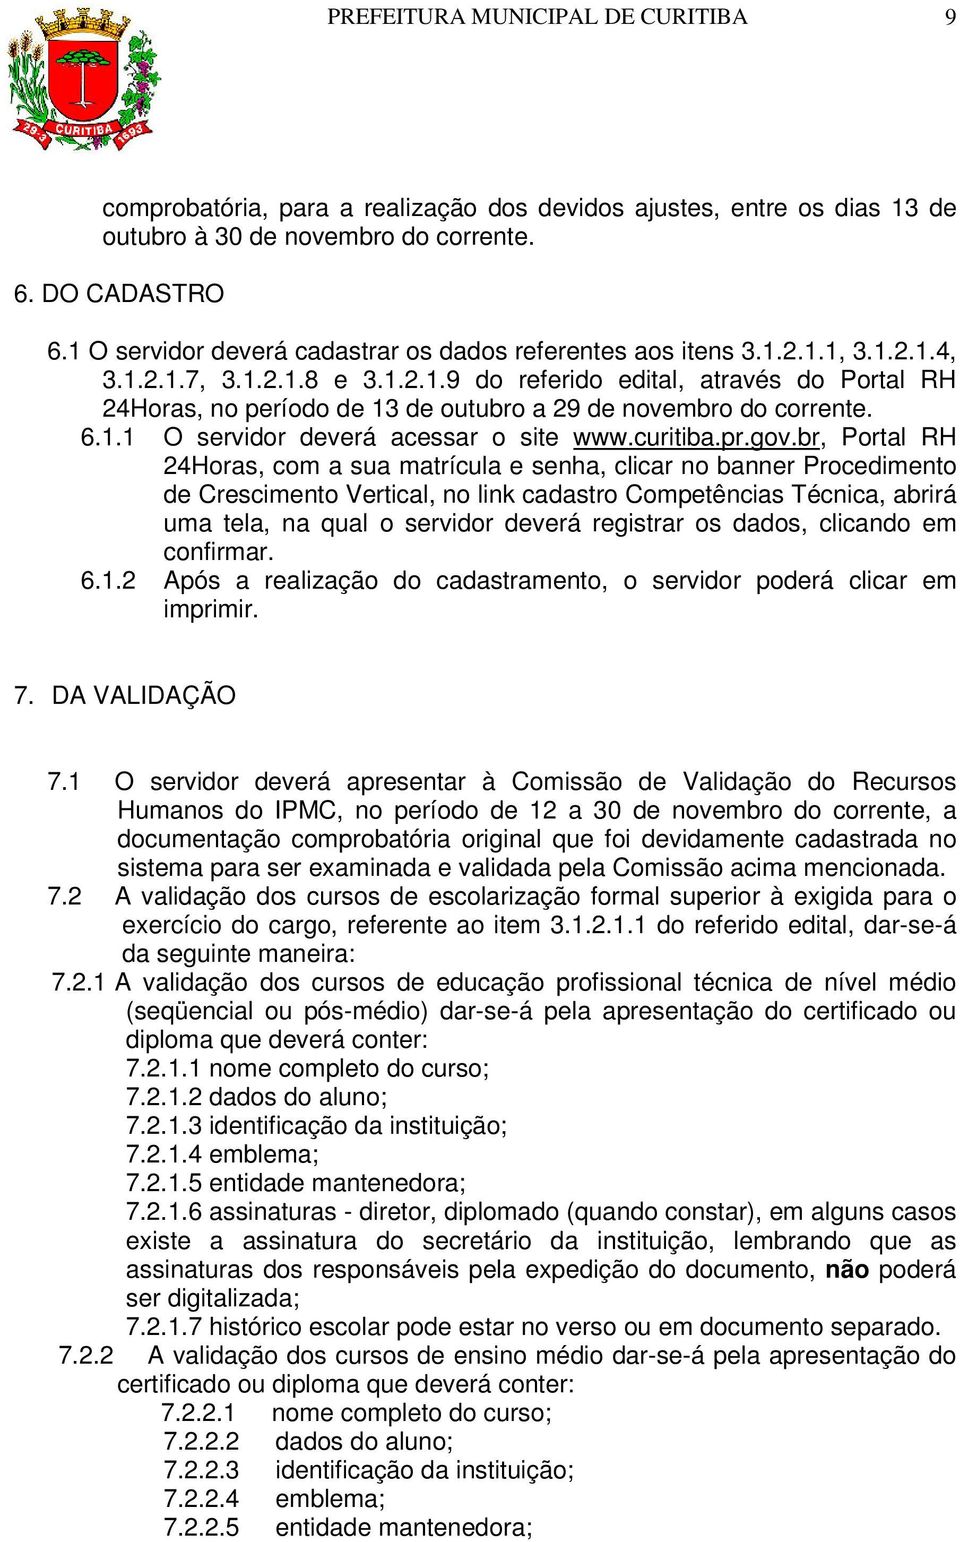 6.1.1 O servidor deverá acessar o site www.curitiba.pr.gov.